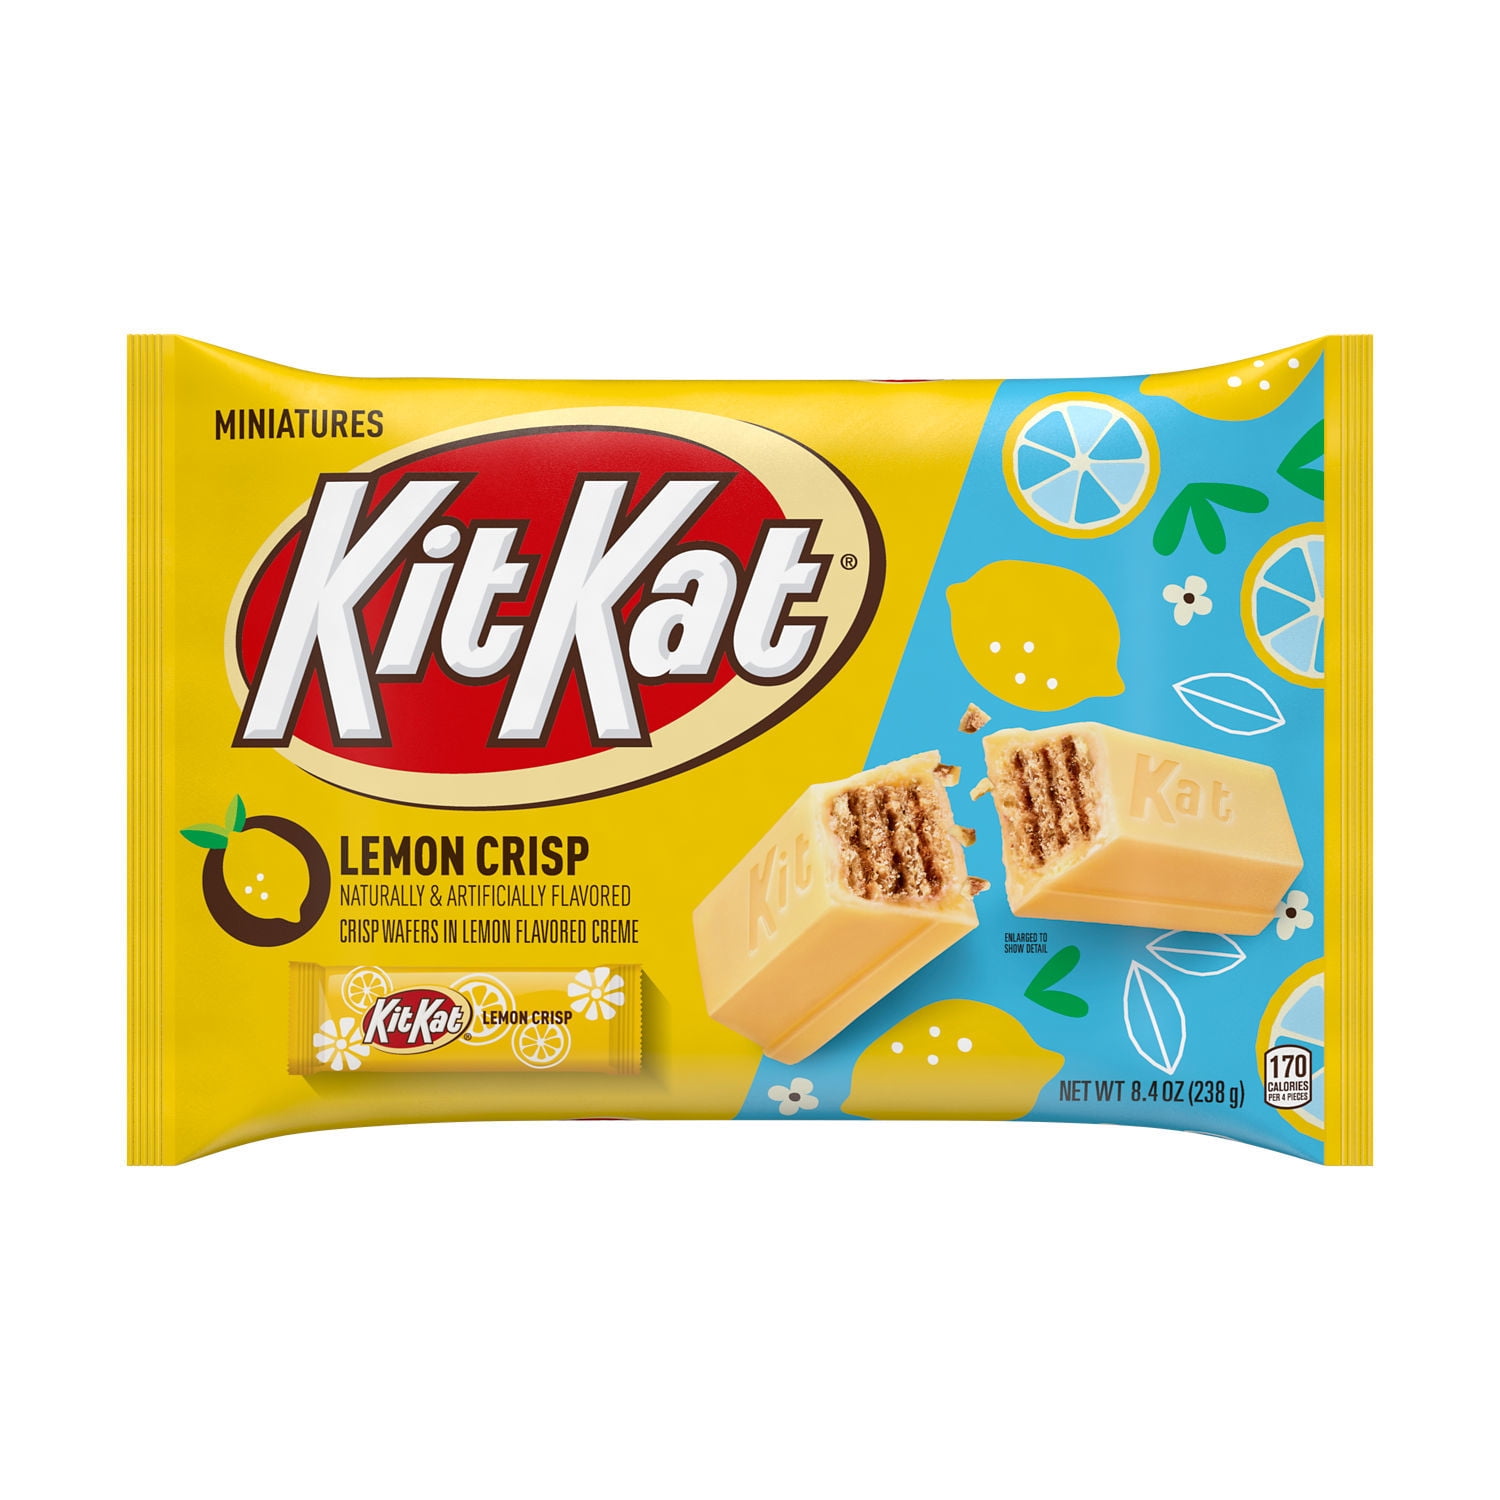 KIT KAT, Lemon Crisp Miniatures Lemon Flavored Creme Wafer, Easter Candy, 8.4 oz, Bag